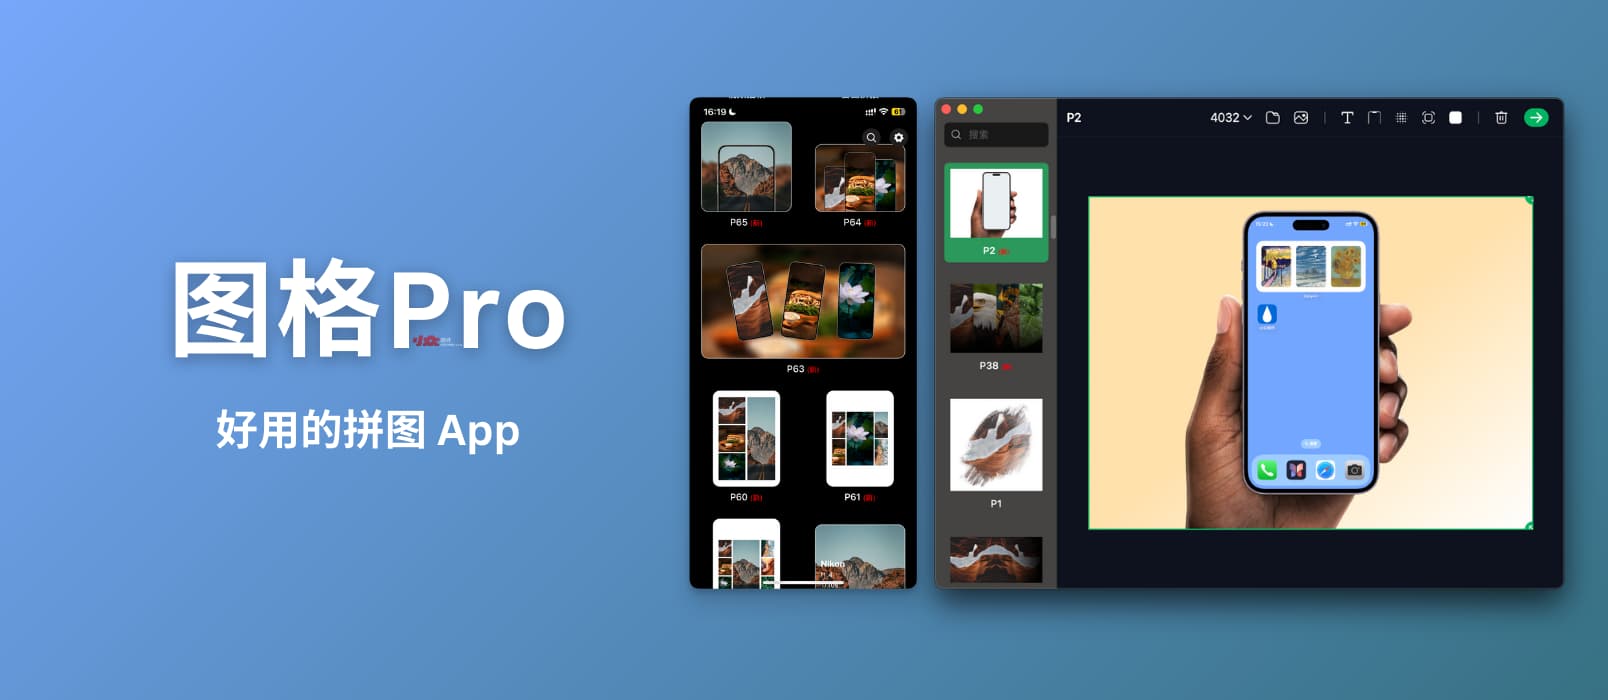 图格Pro – 简单好用的拼图 App[macOS/iOS]